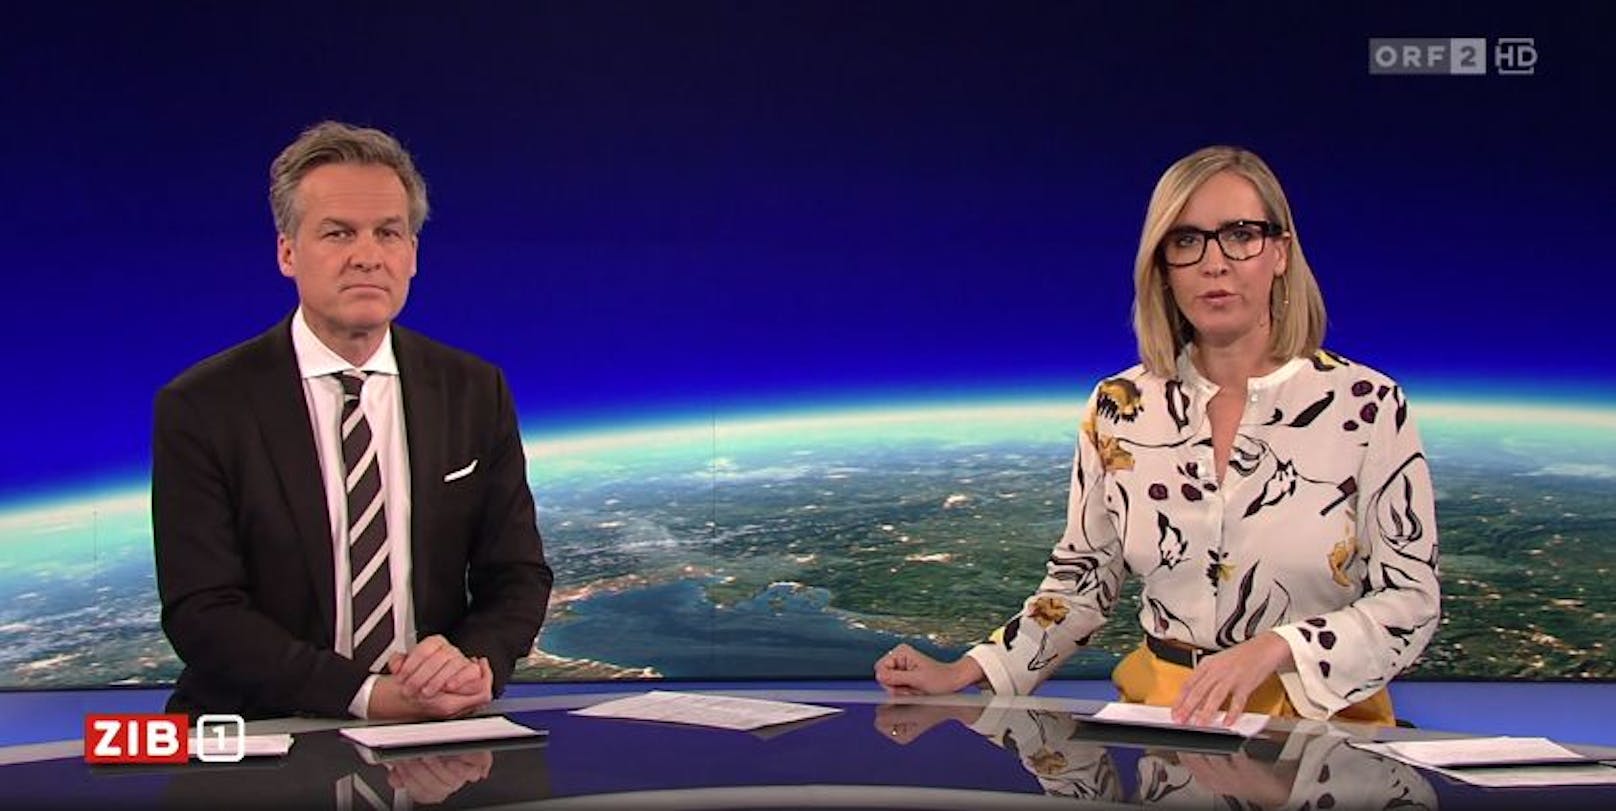 ORF-Star Nadja Bernhard zeigte sich mit kürzeren Haaren, Brille und einer lässigen Herbst-Bluse.